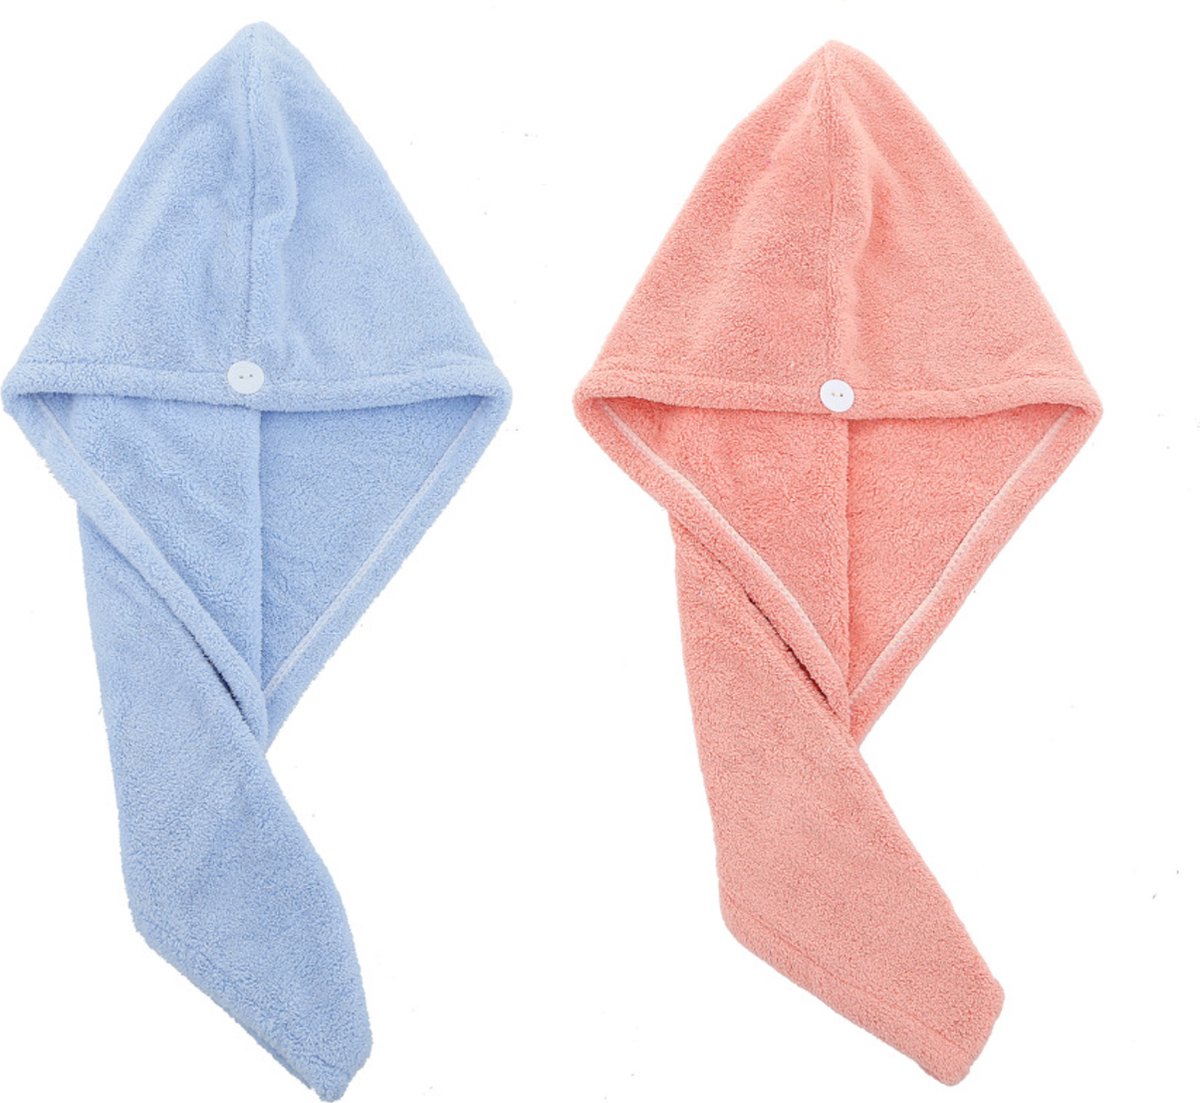 2x Haarhanddoek - Hoofdhanddoek - Hair towel - Sneldrogende handdoek - Haardroger - Haar handdoek - Blauw/Roze